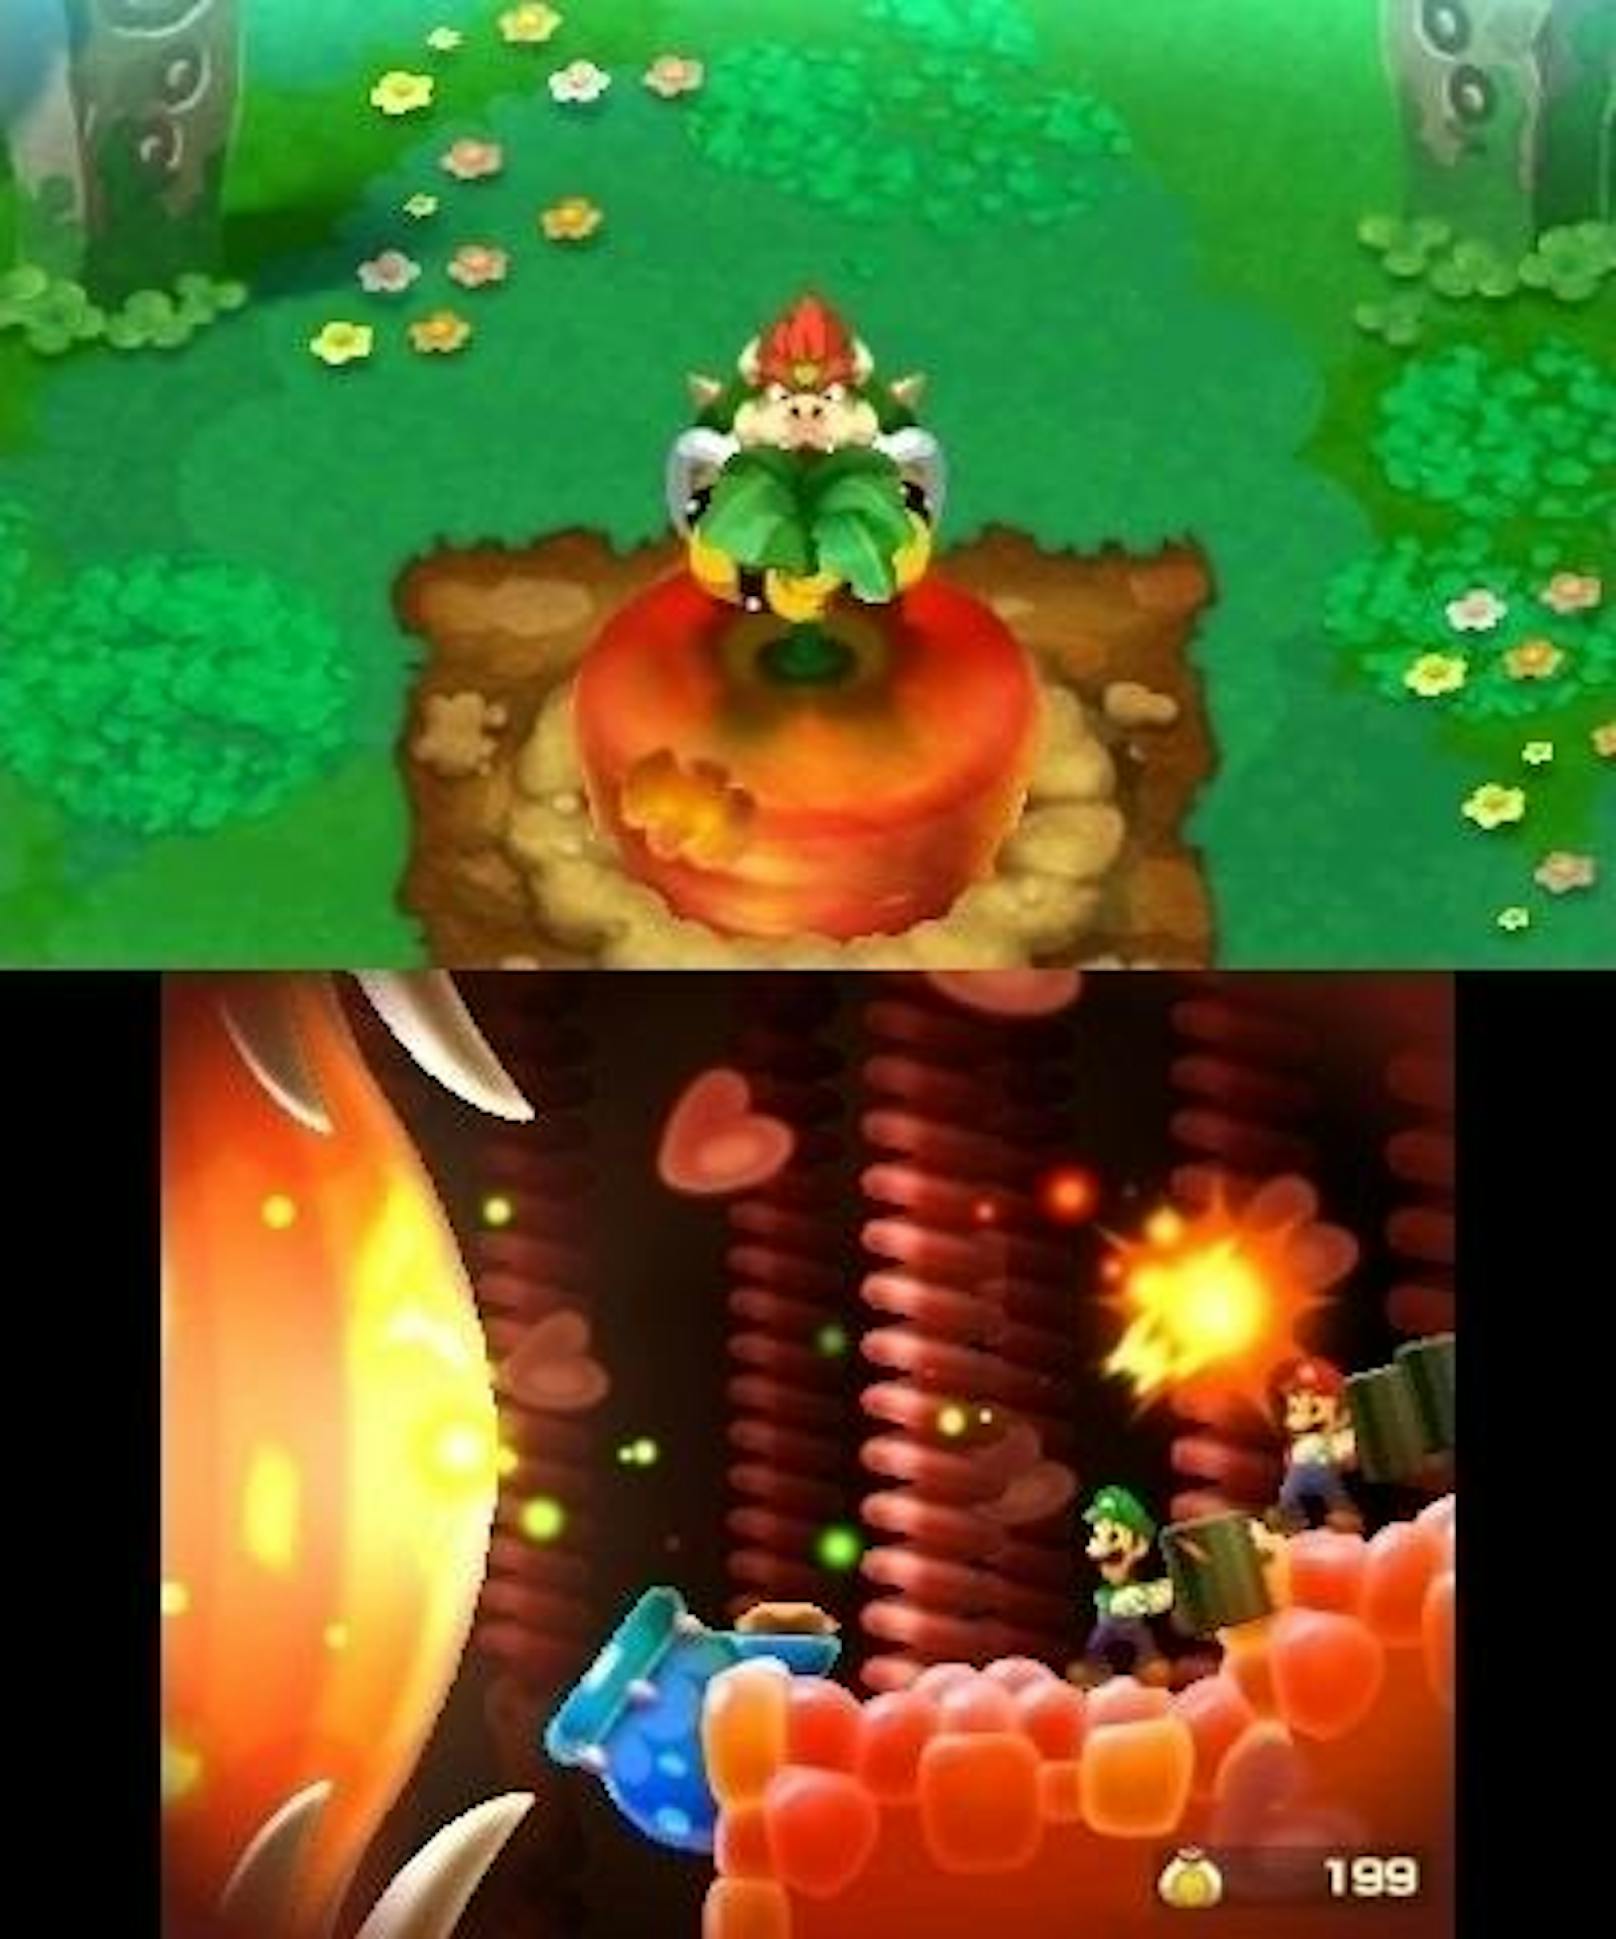 Schlagen Mario und Luigi auf einen Nervenstrang-ähnlichen Strahl, hüpft der sonst nicht zu Sprüngen fähige Bowser in der anderen Spielebene erschrocken in die Höhe.